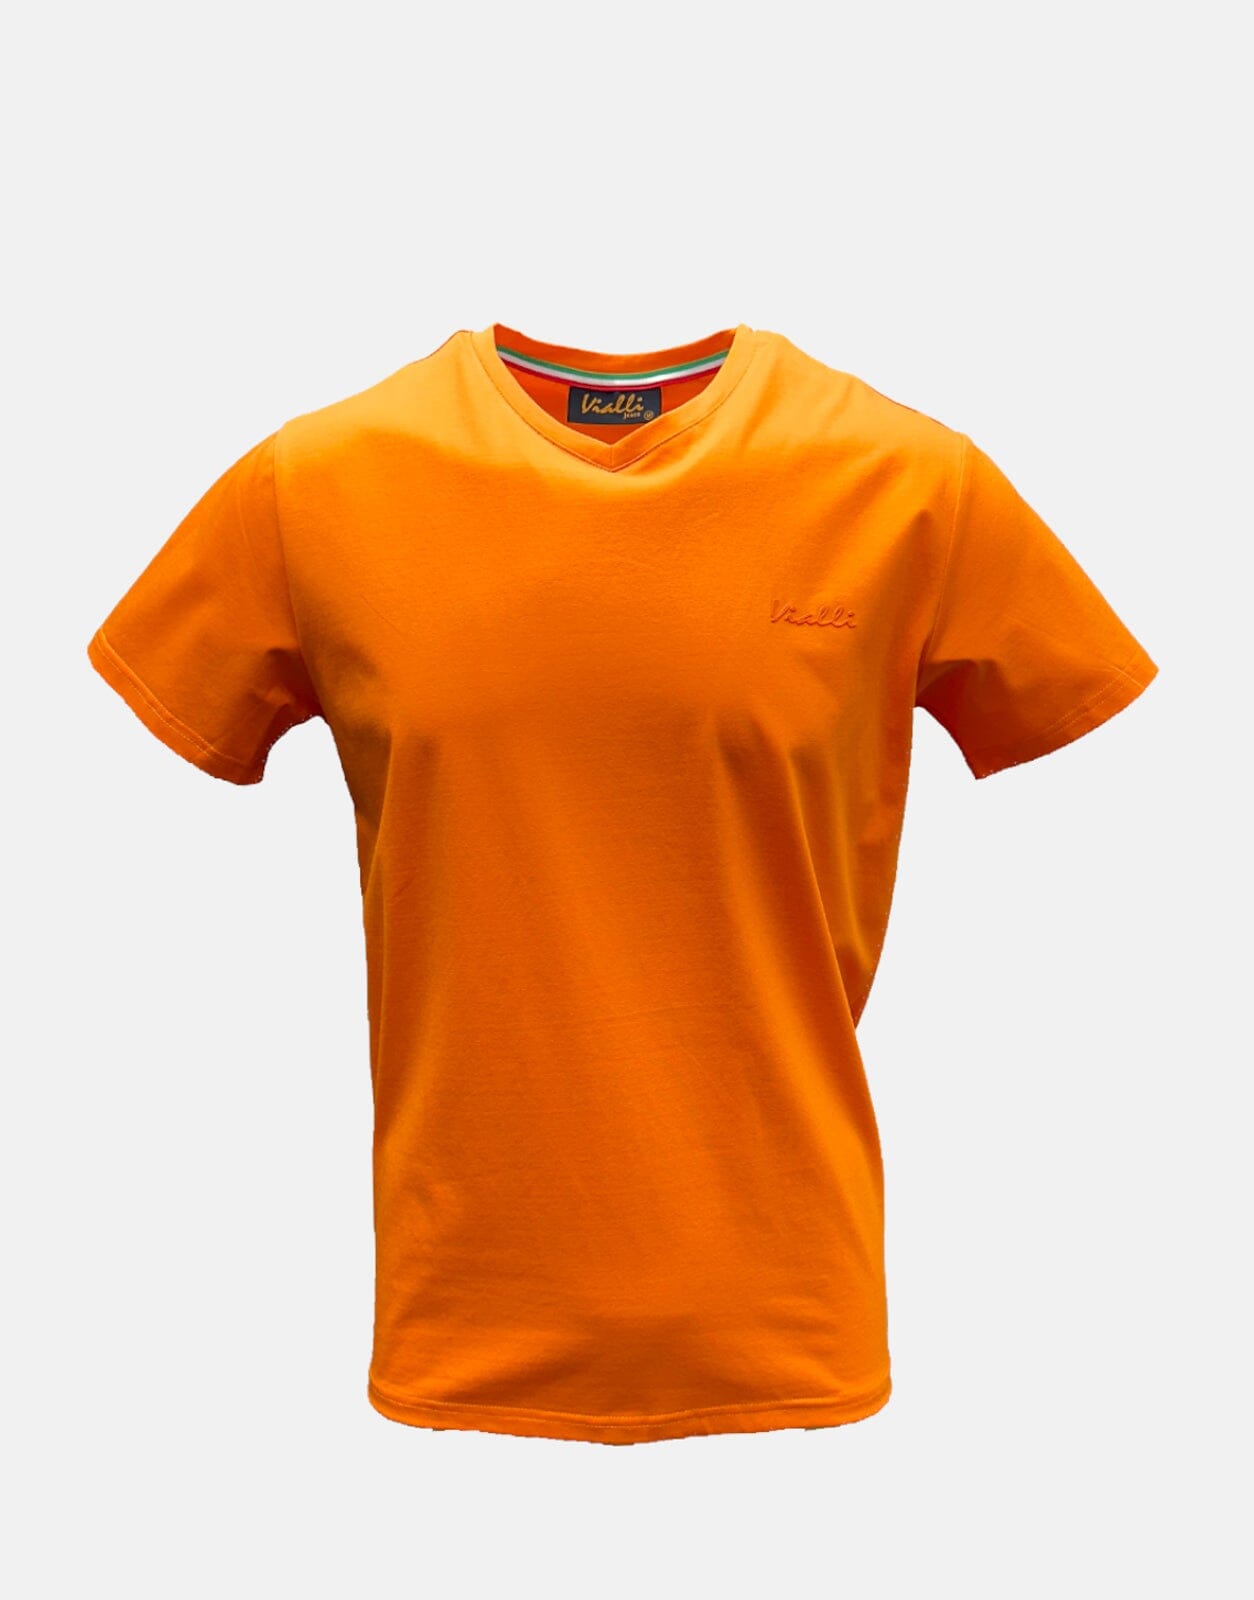 Vialli Bold Orange T-Shirt